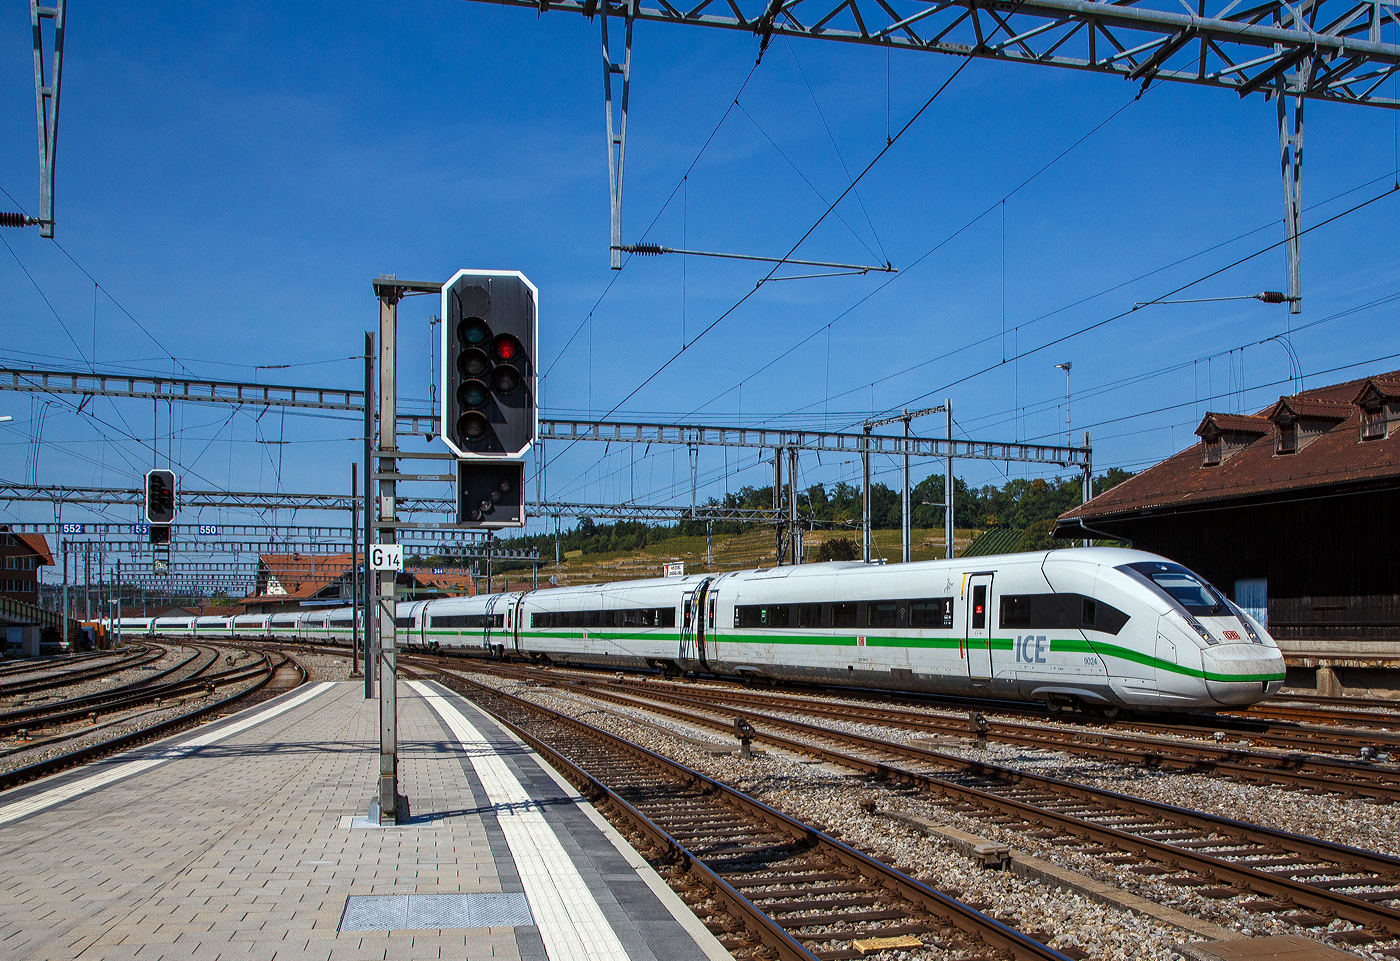 Der grn gestreifte ICE 4 der BR 412.0, Tz 9024 (BR 412.0 / 812) der DB Fernverkehr AG erreicht am 08 September 2021, als ICE 275 von Berlin Ostbahnhof nach Interlaken Ost, pnktlich den Bahnhof Spiez.

Die Triebzge haben keine Triebkpfe wie die ersten beiden ICE-Baureihen, sondern besitzen mehrere eigenstndige angetriebene Wagen (sogenannte „Powercars“), die ber die Zuglnge verteilt sind. Dabei hat ein 12-teiliger Zug sechs angetriebene Wagen („Powercars“). Diese verfgen jeweils ber von anderen Wagen unabhngige Motoren, die unterhalb des Wagenkastens angeordnet sind. Weil damit auch in den Endwagen Raum fr Fahrgste ist, knnen im ICE 4 besonders viele Sitzpltze angeboten werden, es sind 830 im ICE 4. Die um rund zwei Meter lngeren Einzelwagen machen den ICE 4 zu einem Nutzflchenweltmeister, bei gleichbleibender Beinfreiheit. Die Sitzpltze verteilen sich auf 205 in der 1. und 625 Pltze in der 2. Klasse. Unterschied zu allen bisherigen ICE-Zgen werden die mit rund 28 Metern lngeren Wagenksten der ICE-4-Flotte aus Stahl gefertigt. Dabei wird, erstmals im Stahl-Schienenfahrzeugbau, die Laserschweitechnik verwendet. Damit die 12- teiligen ICE 4 „etwas“ pnktlicher unterwegs sind, wurde ihre Hchstgeschwindigkeit von 250 auf 265 km/h erhht.

TECHNISCHE DATEN (12-Teiler / BR 412.0):
Spurweite: 1.435 mm
Achsfolge: 2’2’+Bo’Bo’+Bo’Bo’+2’2’+Bo’Bo’+Bo’Bo’+2’2’+Bo’Bo’+2’2’+Bo’Bo’+2’2’+2’2’
Lnge ber Kupplung (Zug): 345,71 m 
Lnge ber Puffer (Steuerwagen): 29.106 mm (2 x)
Lnge ber Puffer (Mittelwagen): 28.750 mm (10 x)
Drehzapfenabstand: 18.500 mm
Achsabstand im Triebdrehgestell: 2.600 mm
Achsabstand im Laufdrehgestell: 2.300 mm
Treibraddurchmesser:  920/840 mm (neu/abgenutzt)
Laufraddurchmesser:  825/750 mm (neu/abgenutzt)
Leergewicht: 675 t
Hchstgeschwindigkeit: 265 km/h (ursprnglich  250 km/h)
Anzahl Powercars: 6
Traktionsleistung: 9.900 kW (kurzzeitig 13.500 kW)
Anzahl Achsen:48 (davon 24 angetrieben)
Radsatzlast: ca. 18 t
Spannung: 15 kV / 16,67 Hz
